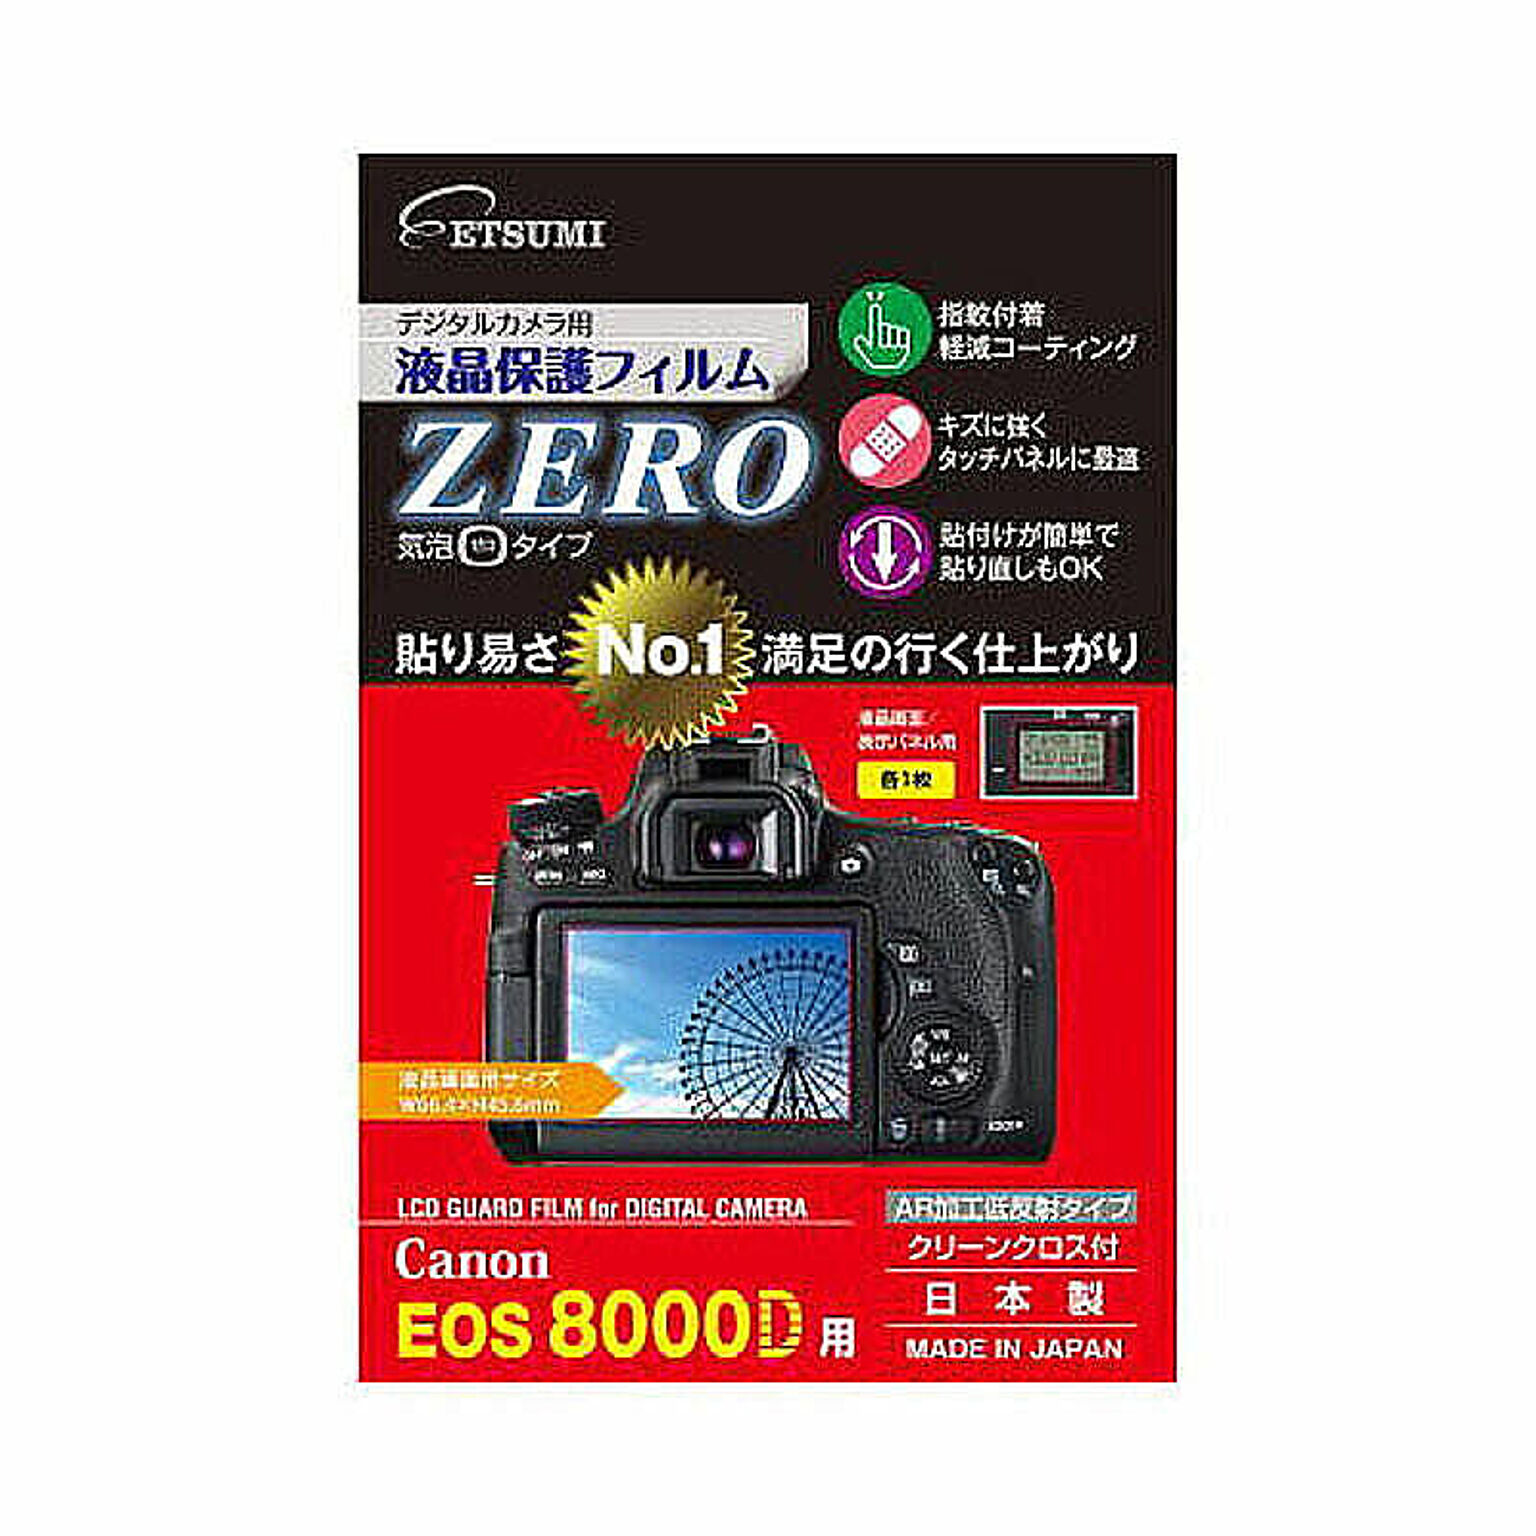 エツミ デジタルカメラ用液晶保護フィルムZERO Canon EOS 8000D専用 E-7338 管理No. 4975981733895